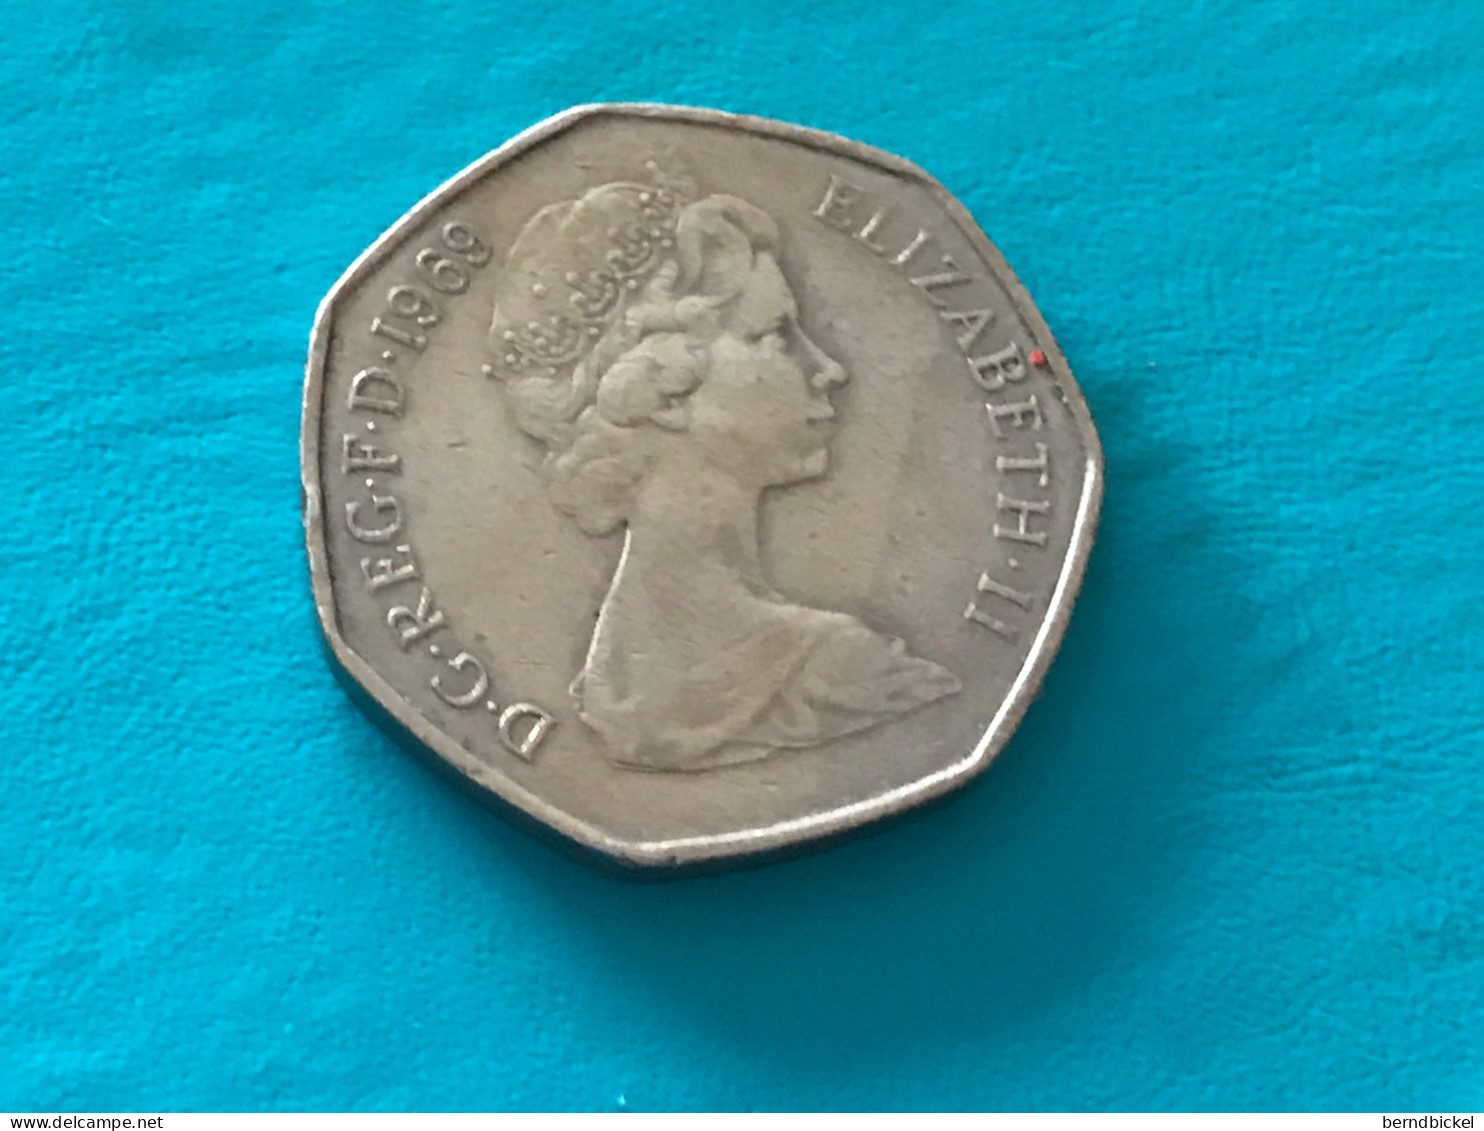 Münze Münzen Umlaufmünze Großbritannien 50 Pence 1969 - 50 Pence